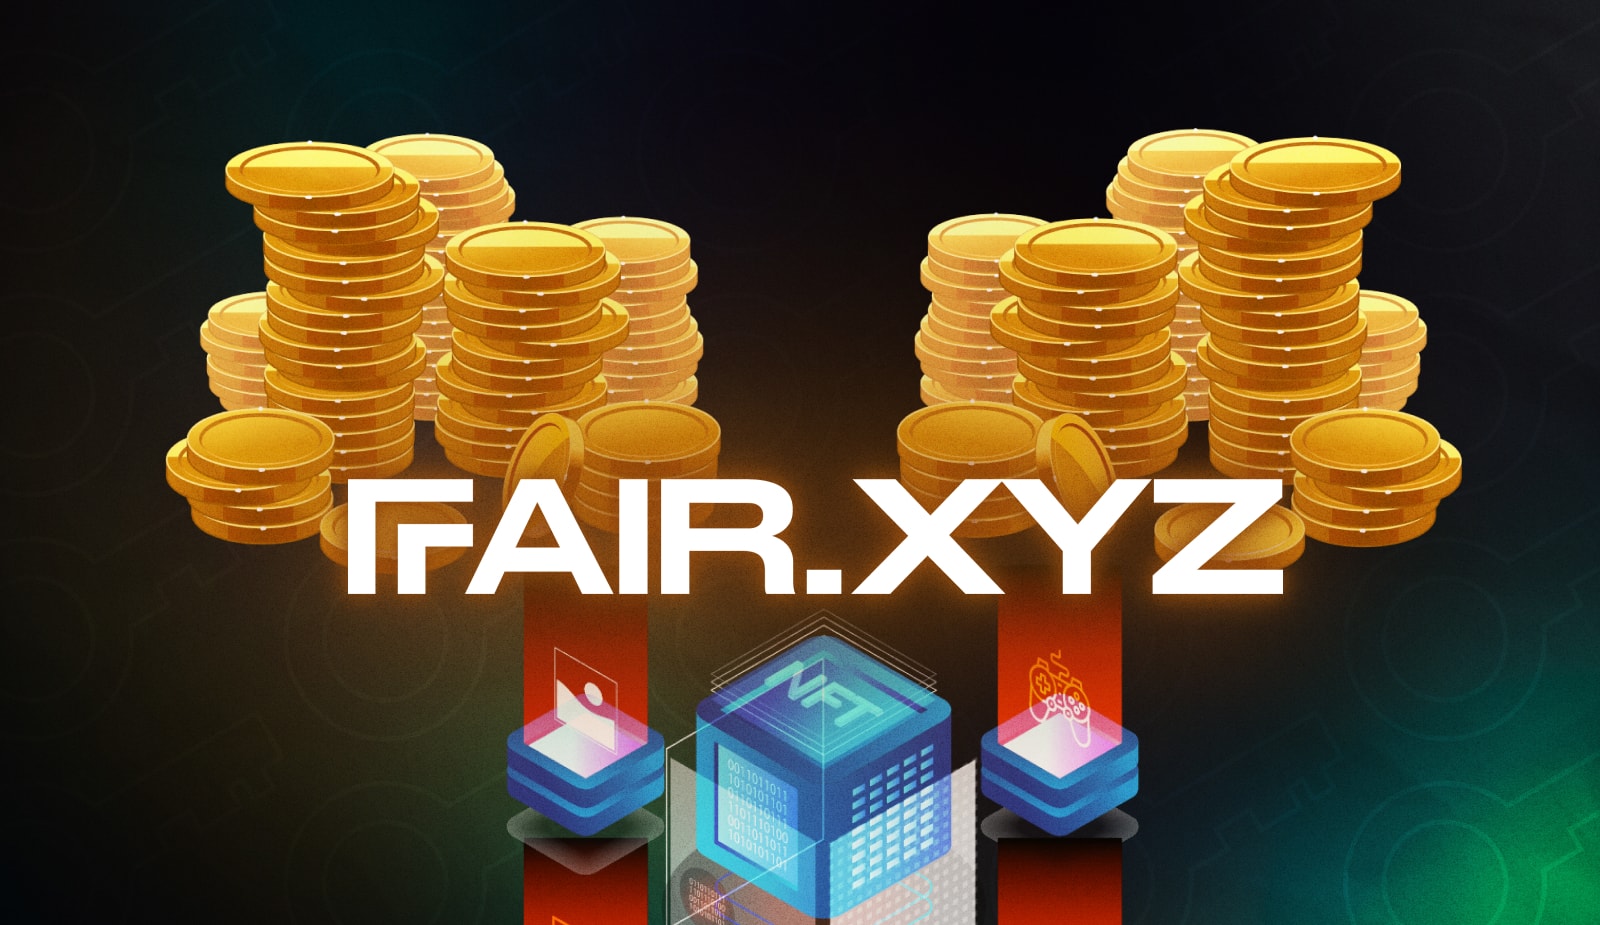 Сервис для минта Fair.xyz закрыл раунд на 4,5 млн долларов. Заглавный коллаж новости.